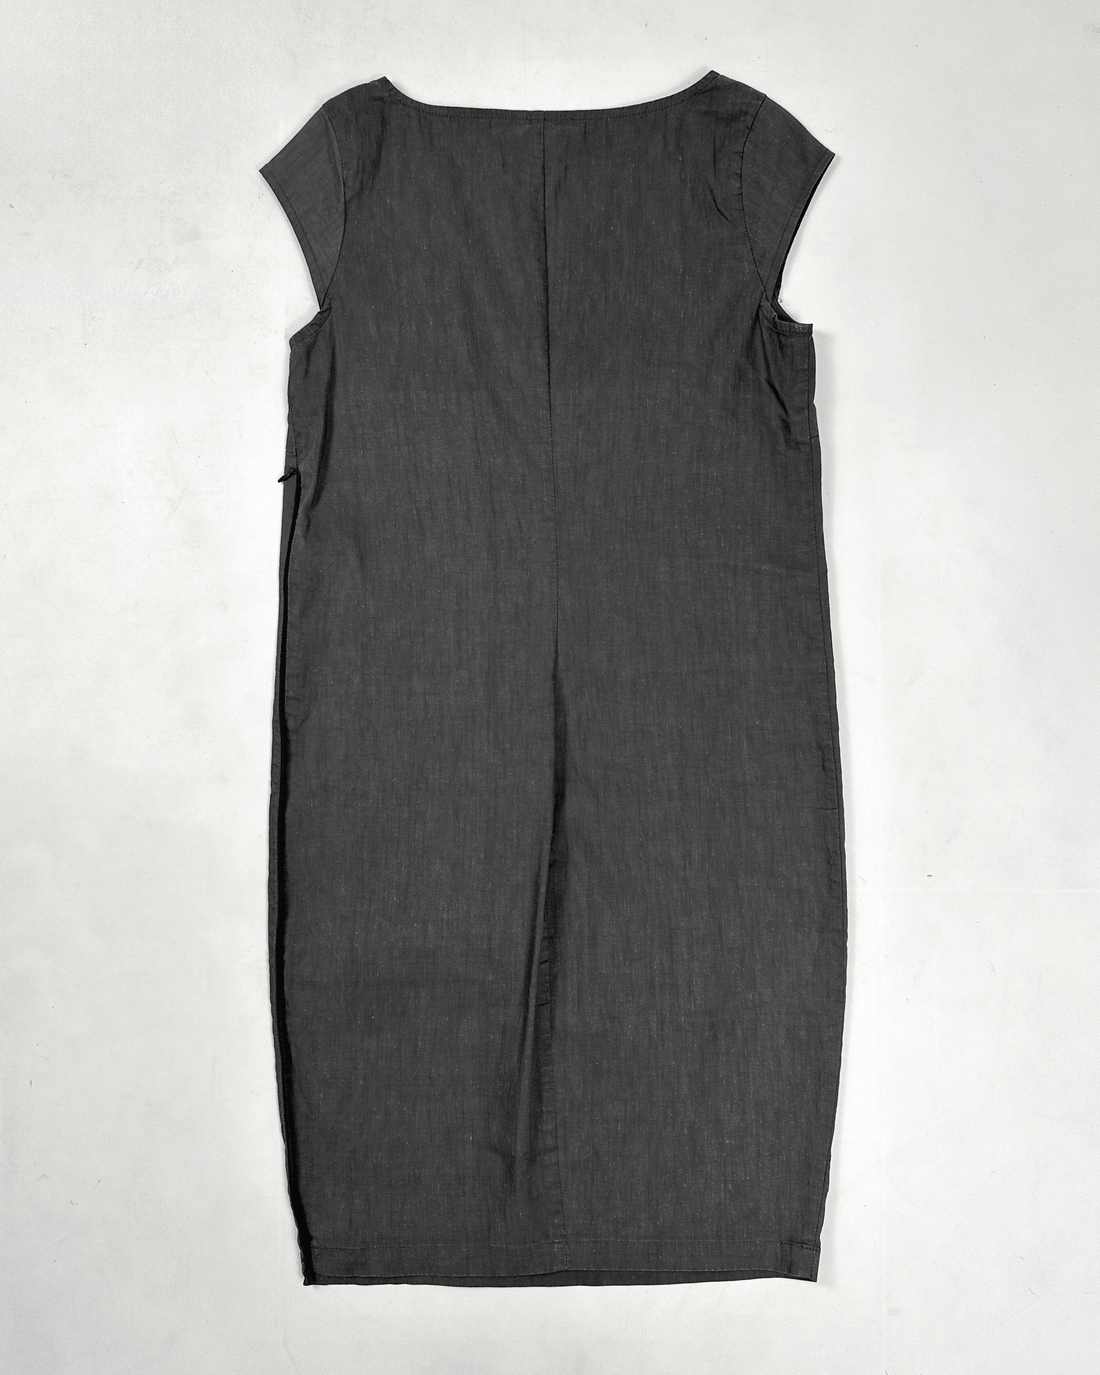 Sarah Paccini Dark Grey Zipped Dress 2000's